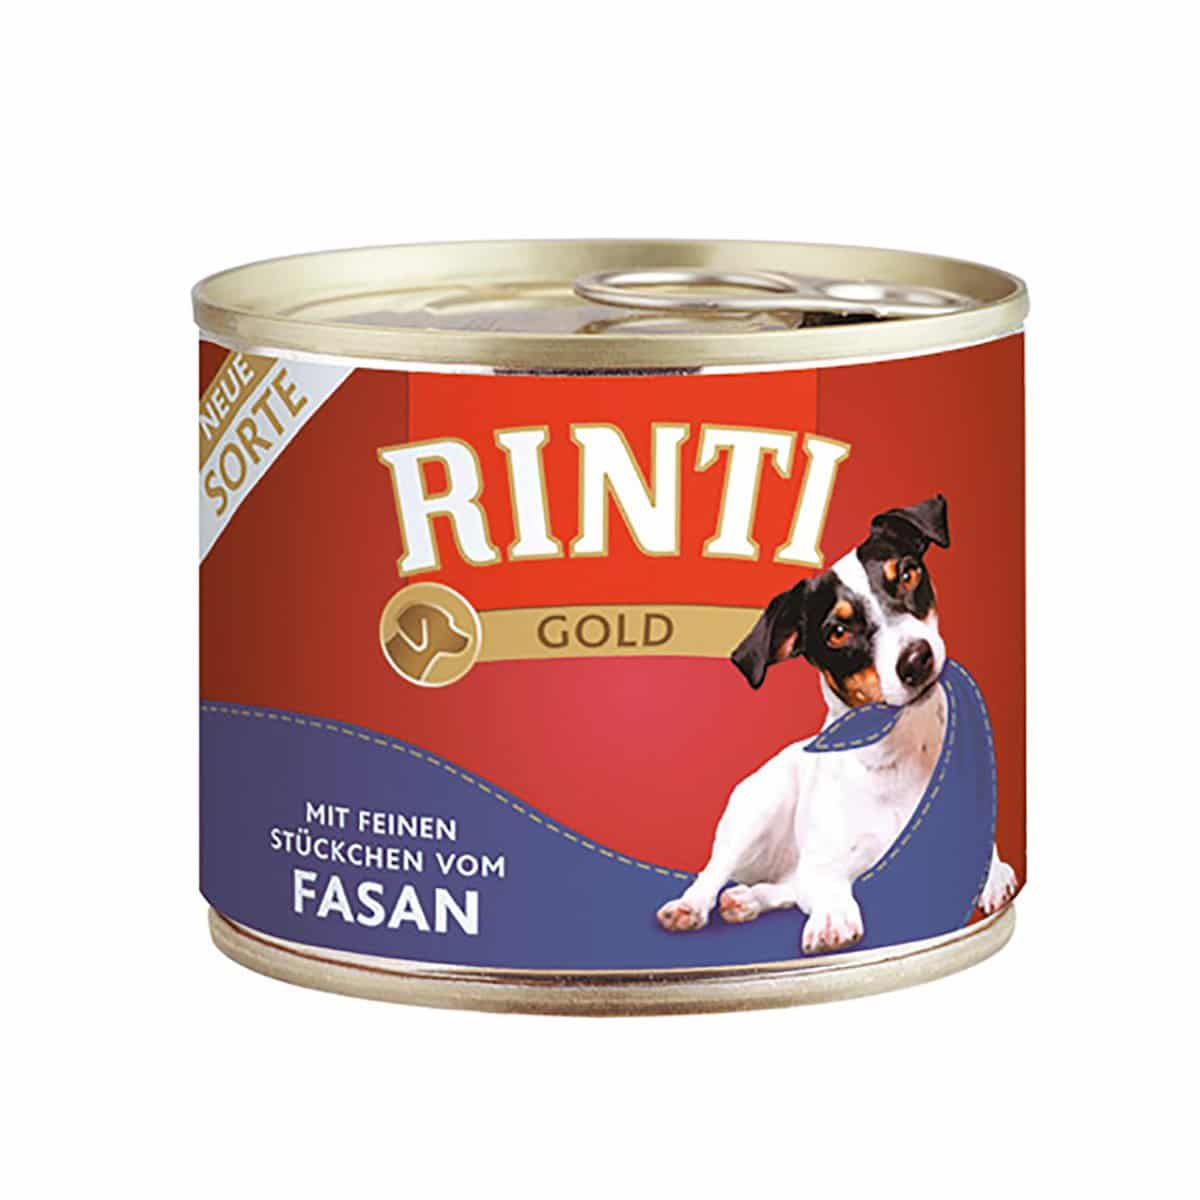 Rinti Gold feine Stückchen vom Fasan 24x185g